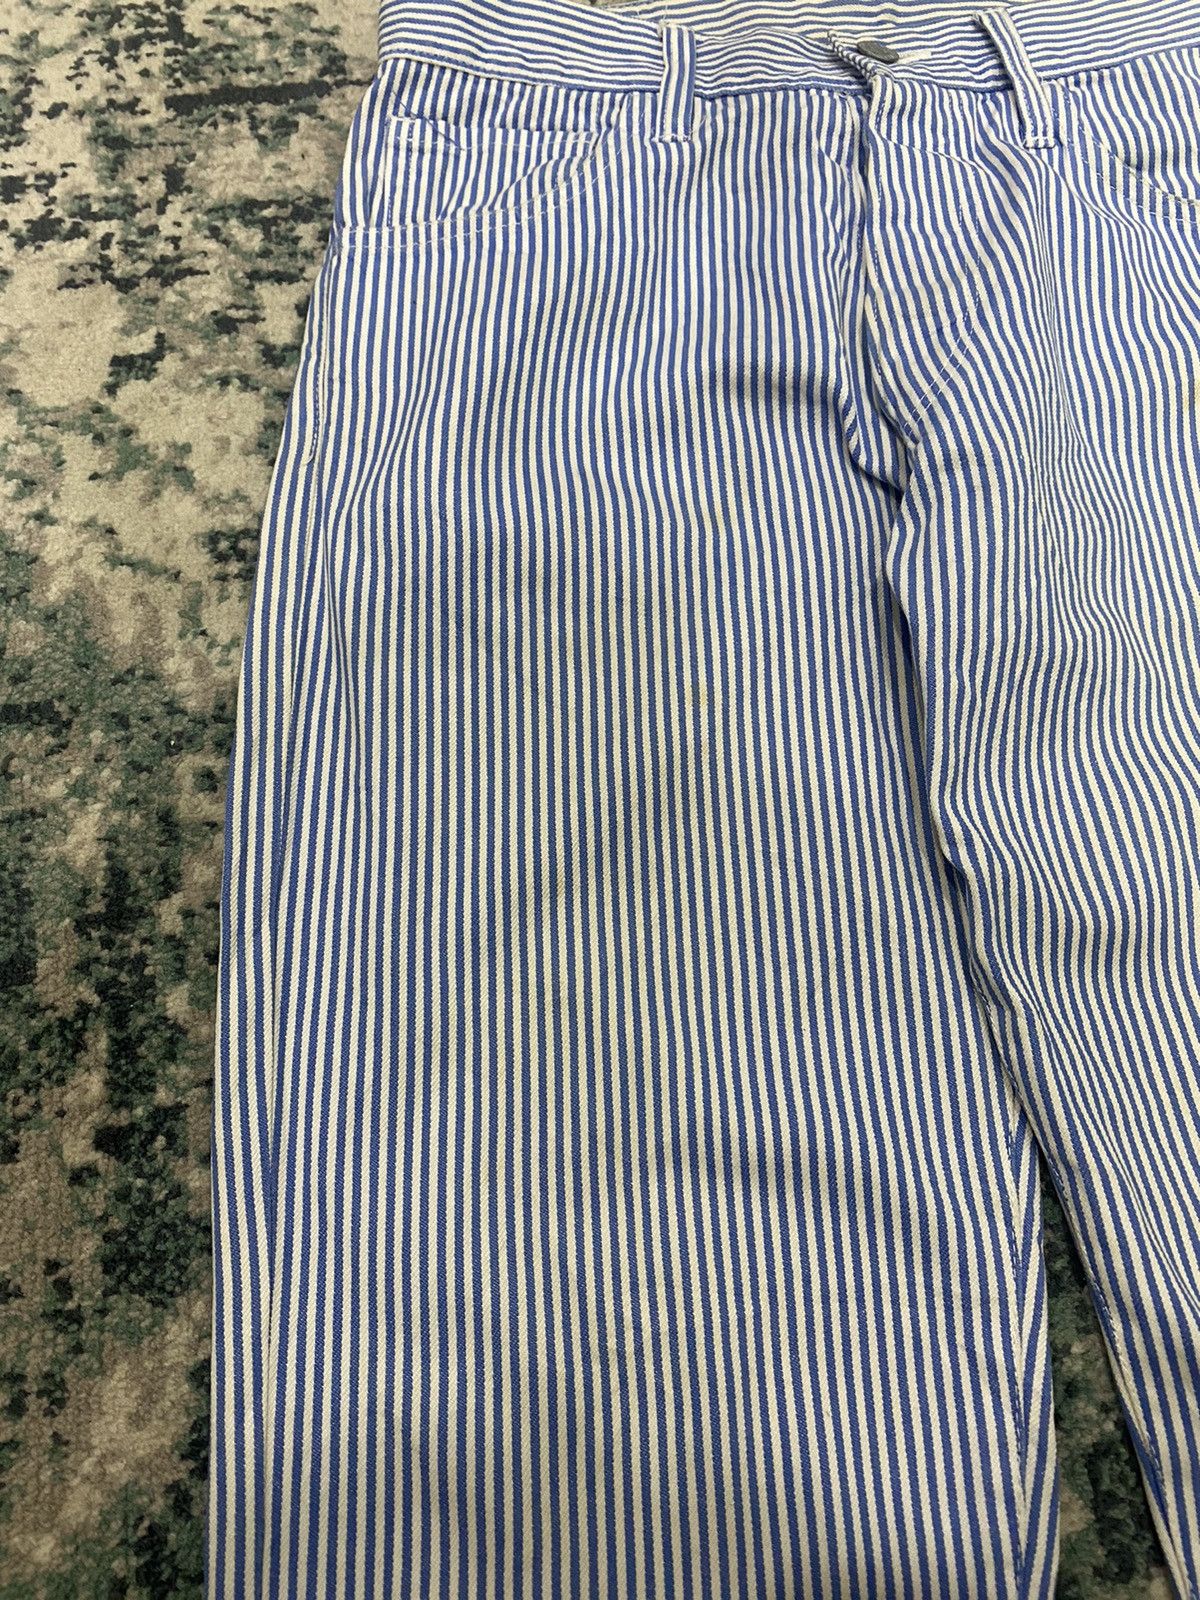 Evisu Japan Yamane Hickory Stripes Denim Pant - 7